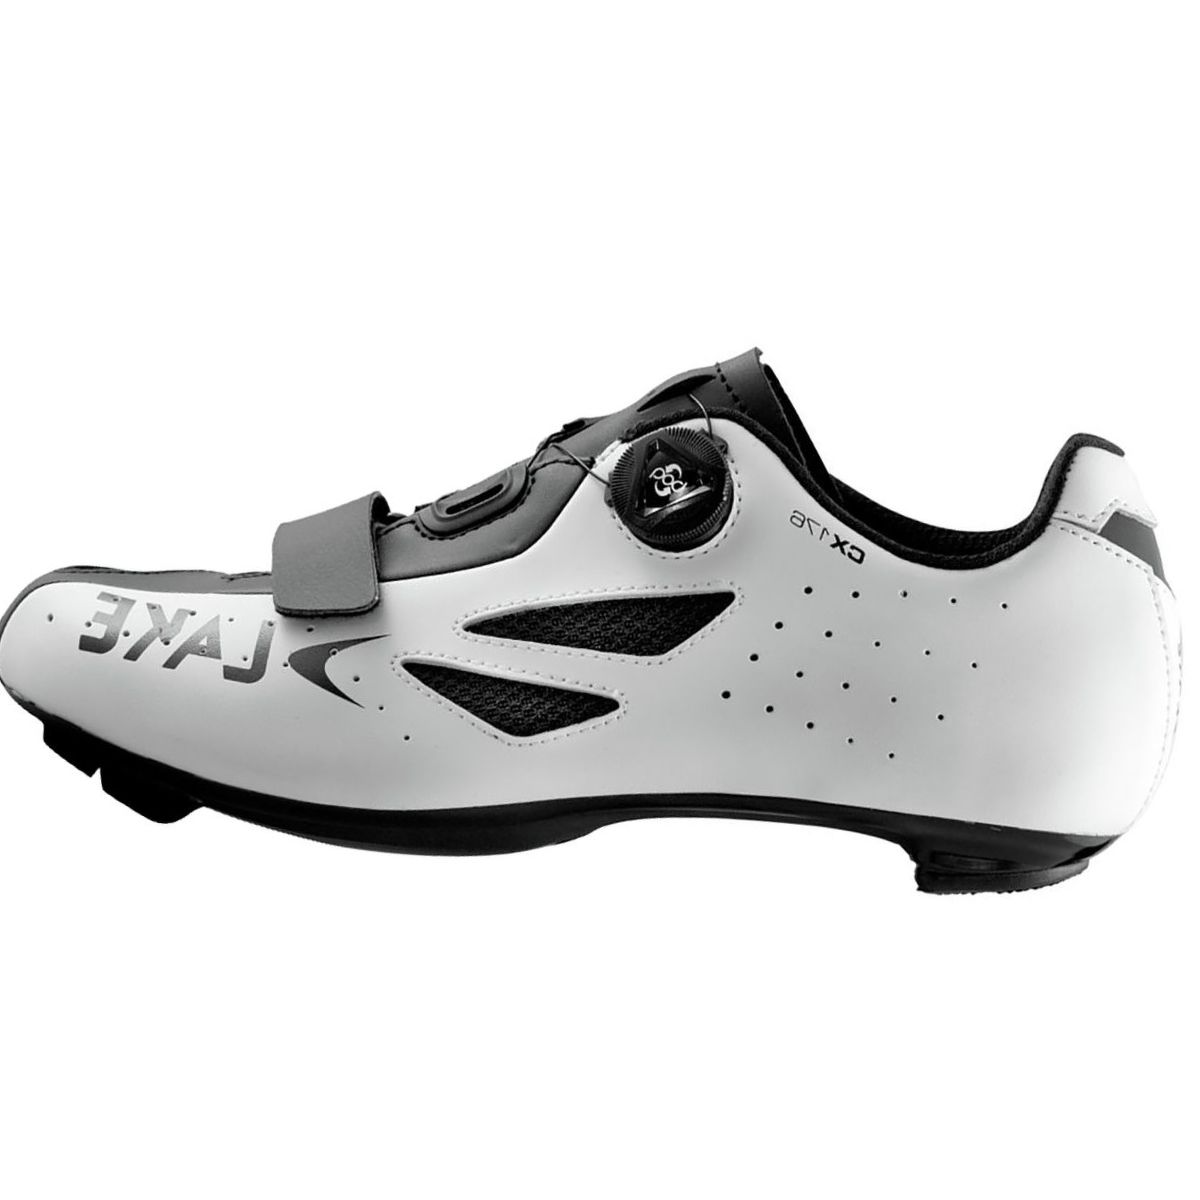 Lake CX176 Cycling Shoe - Men's